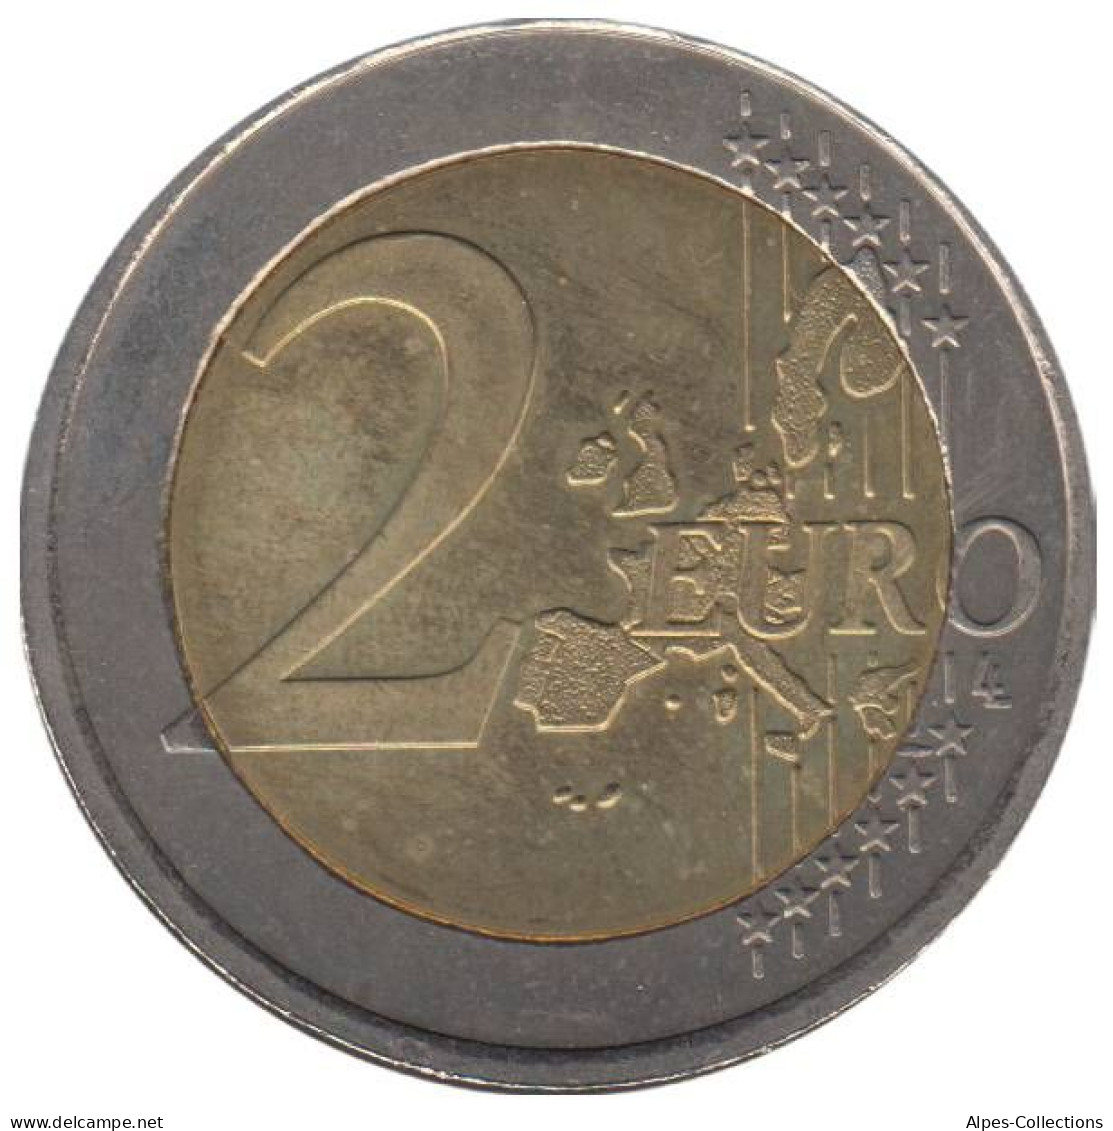 IR20005.1 - IRLANDE - 2 Euros - 2005 - Irlanda